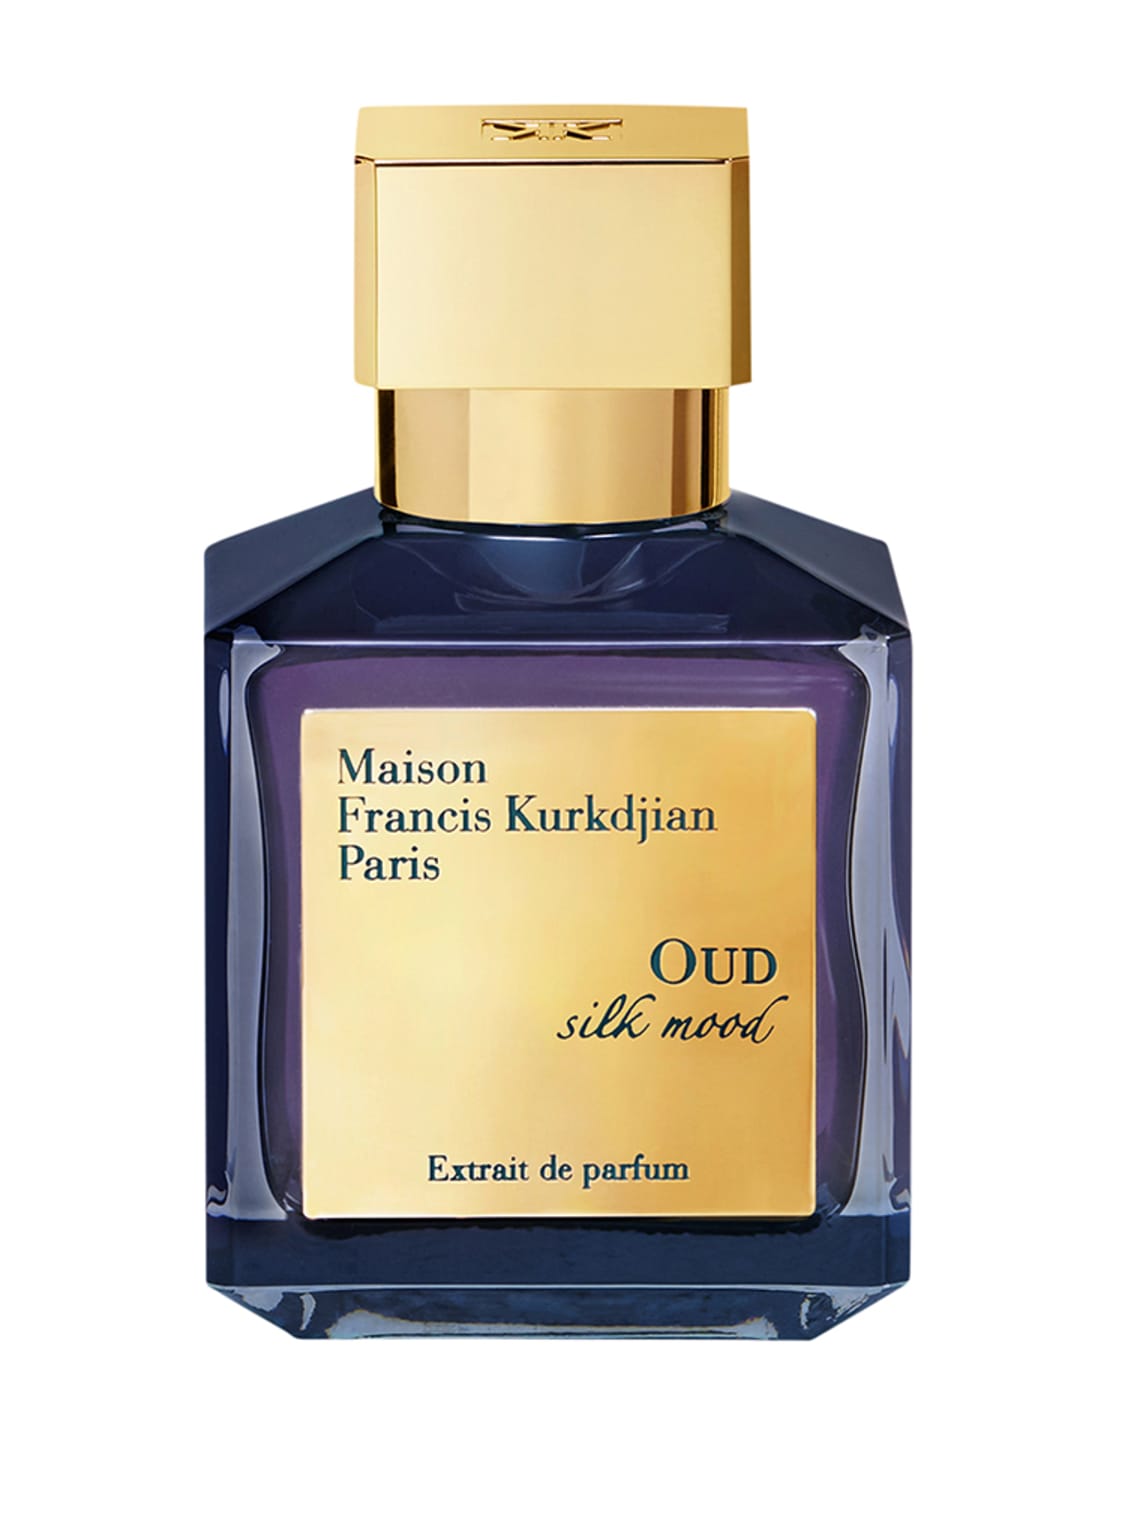 Maison Francis Kurkdjian Paris Oud Silk Mood Extrait de Parfum 70 ml von Maison Francis Kurkdjian Paris